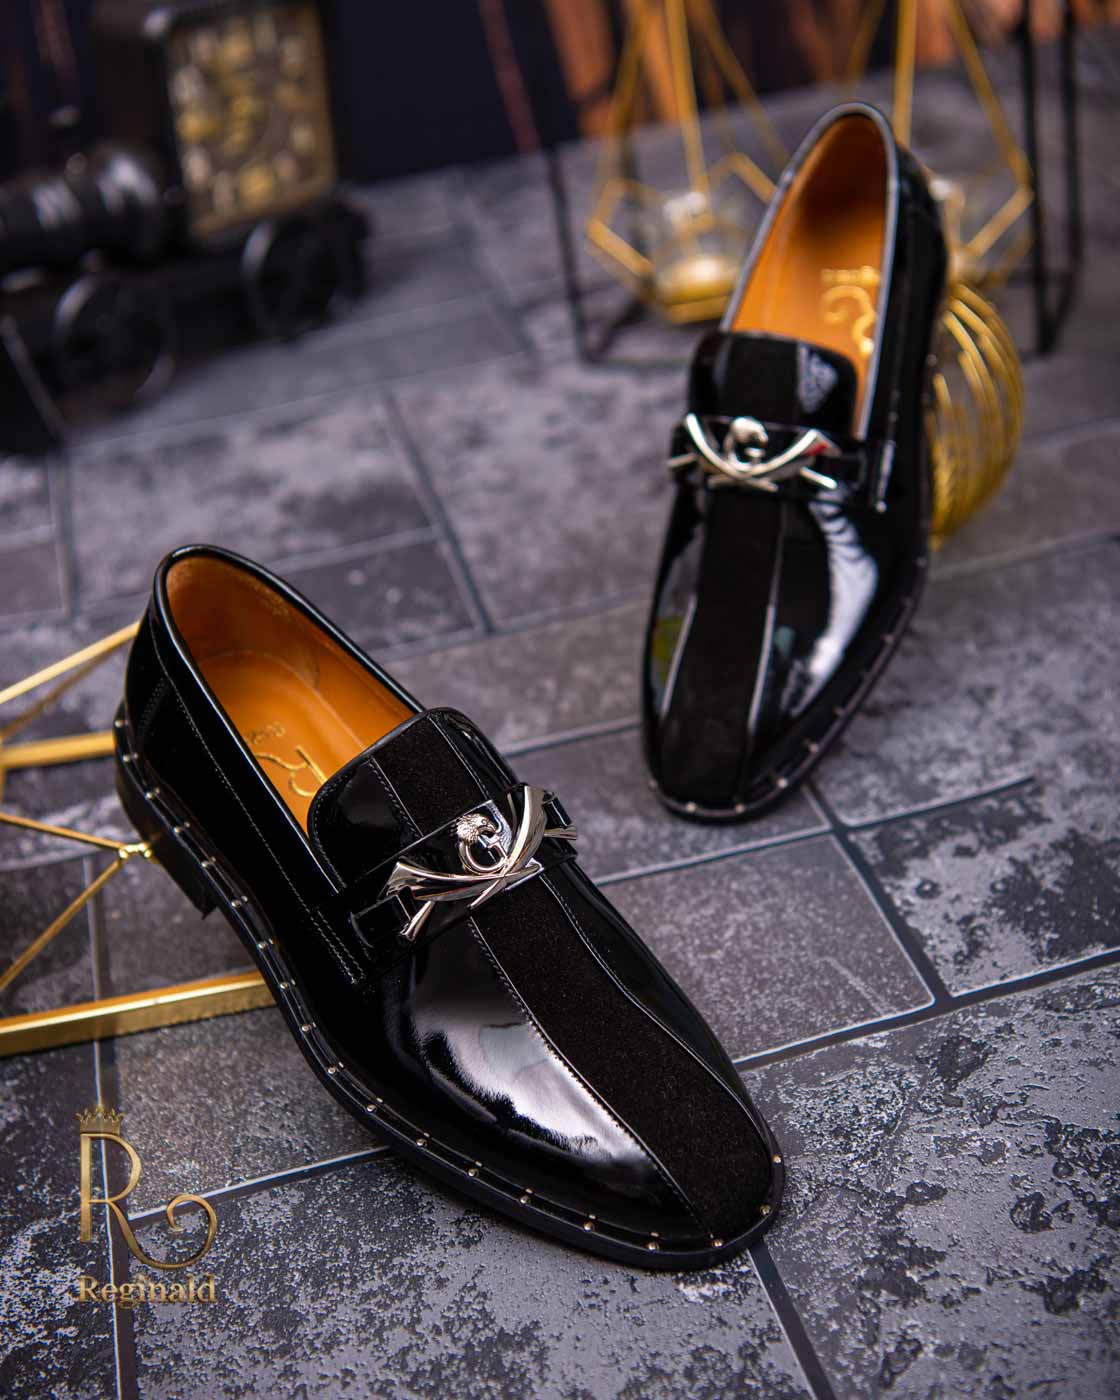 Louis Vuitton Black Patent Velvet Men Loafers Moccasins 10.5 US